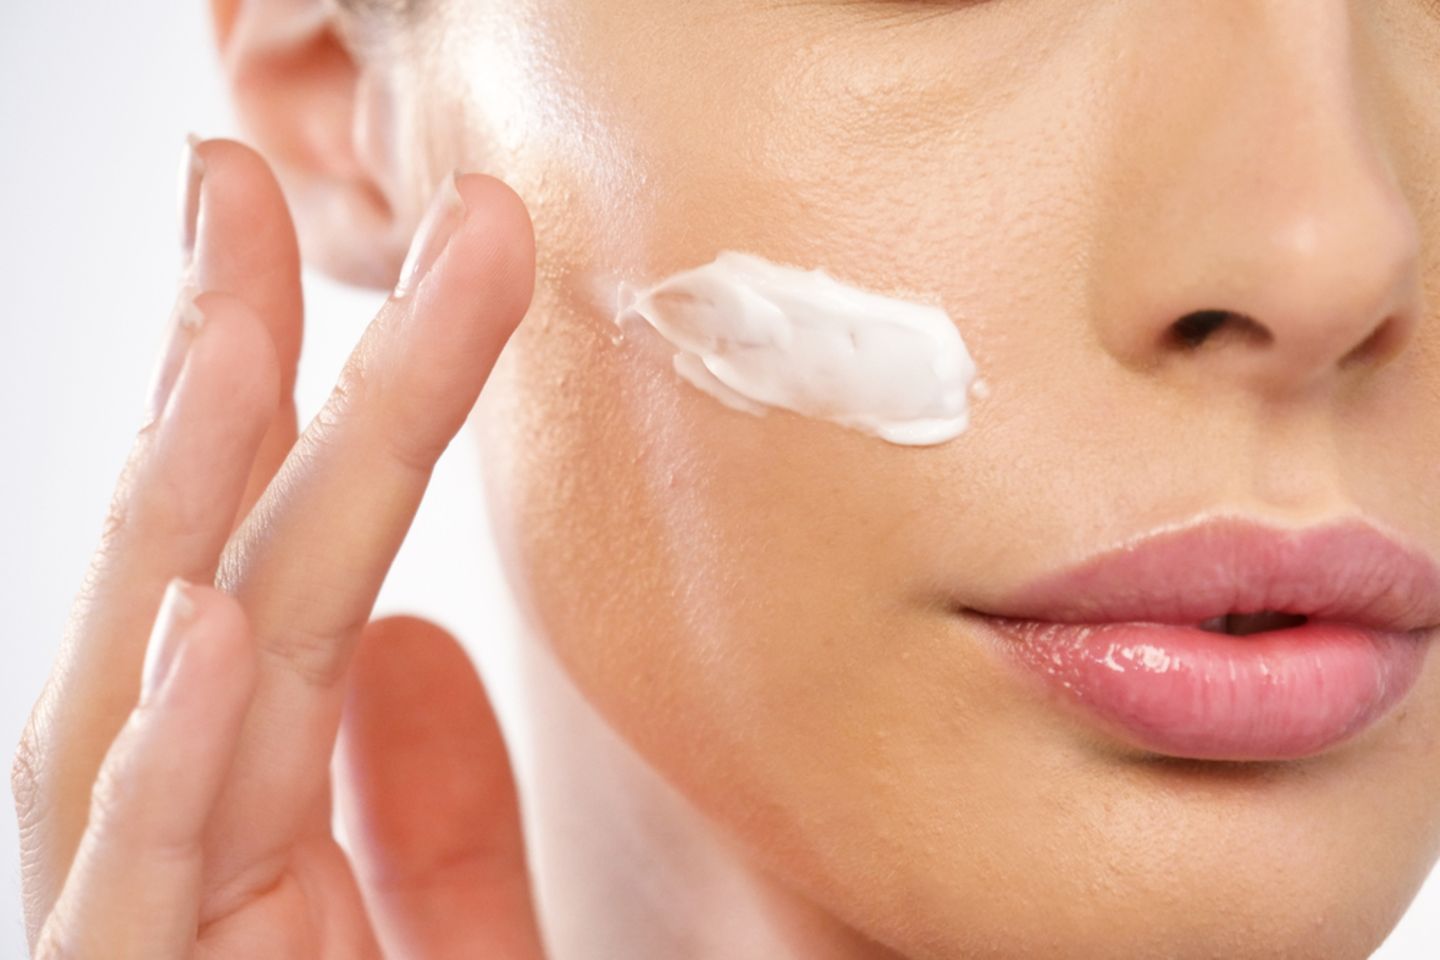 Hautpflege: Frau cremt sich das Gesicht ein